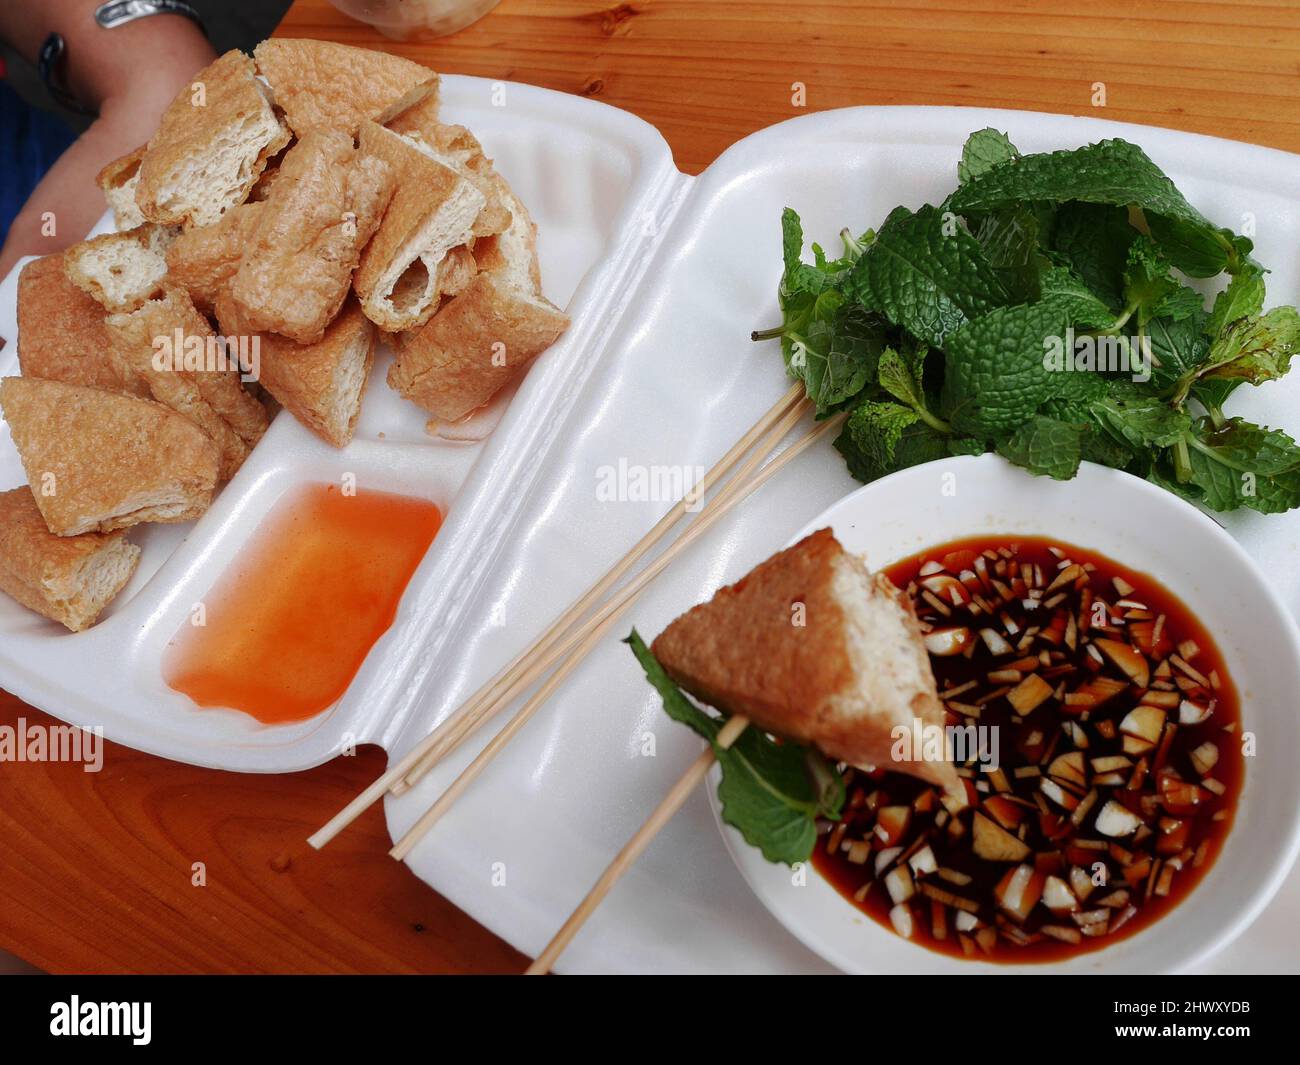 Les Chinois et les voyageurs étrangers achètent et mangent du tofu frit accompagné de légumes et de sauce sucrée dans le restaurant local de la vieille ville de Market Street Teochew Banque D'Images